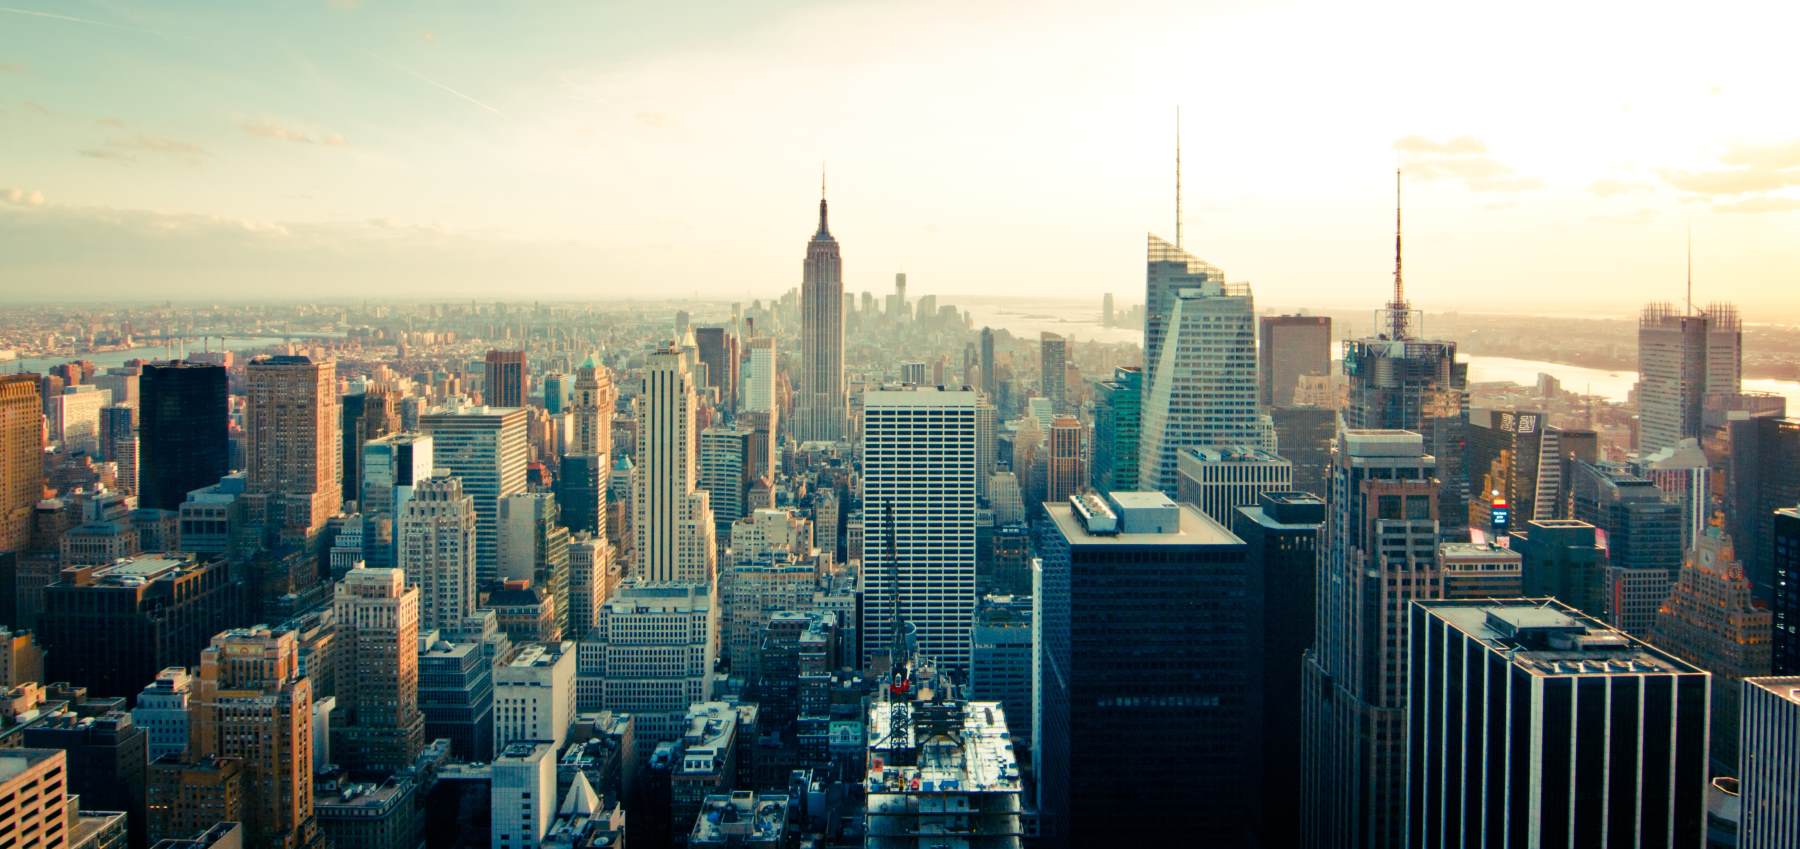 15 Utrolige Udsigtspunkter i New York City - Top of the Rock - Rejs Dig Lykkelig